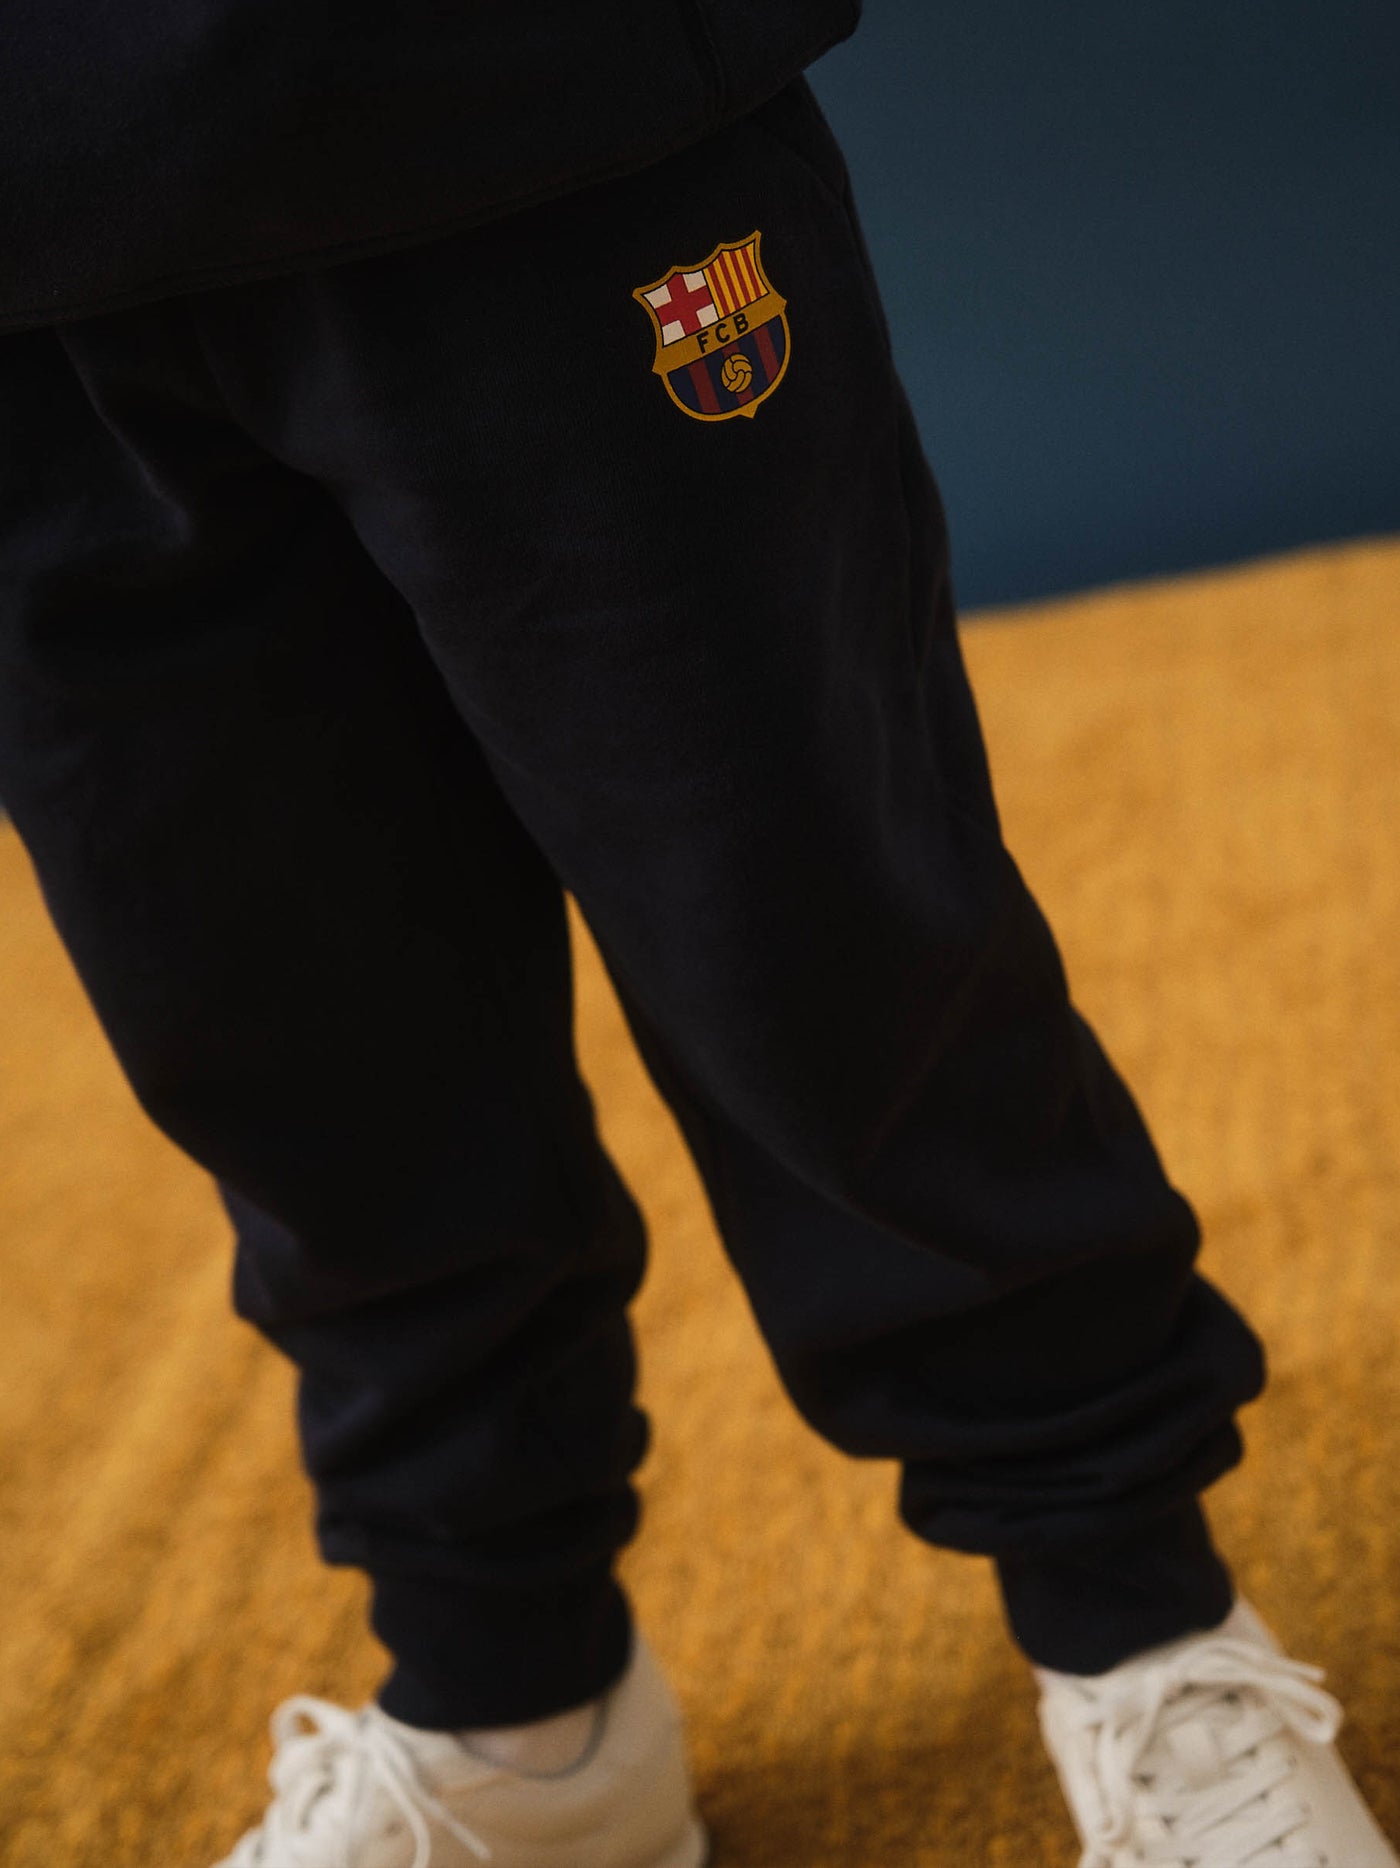 Pantalon de Survêtement Bleu Marine avec Emblème Barça - Junior